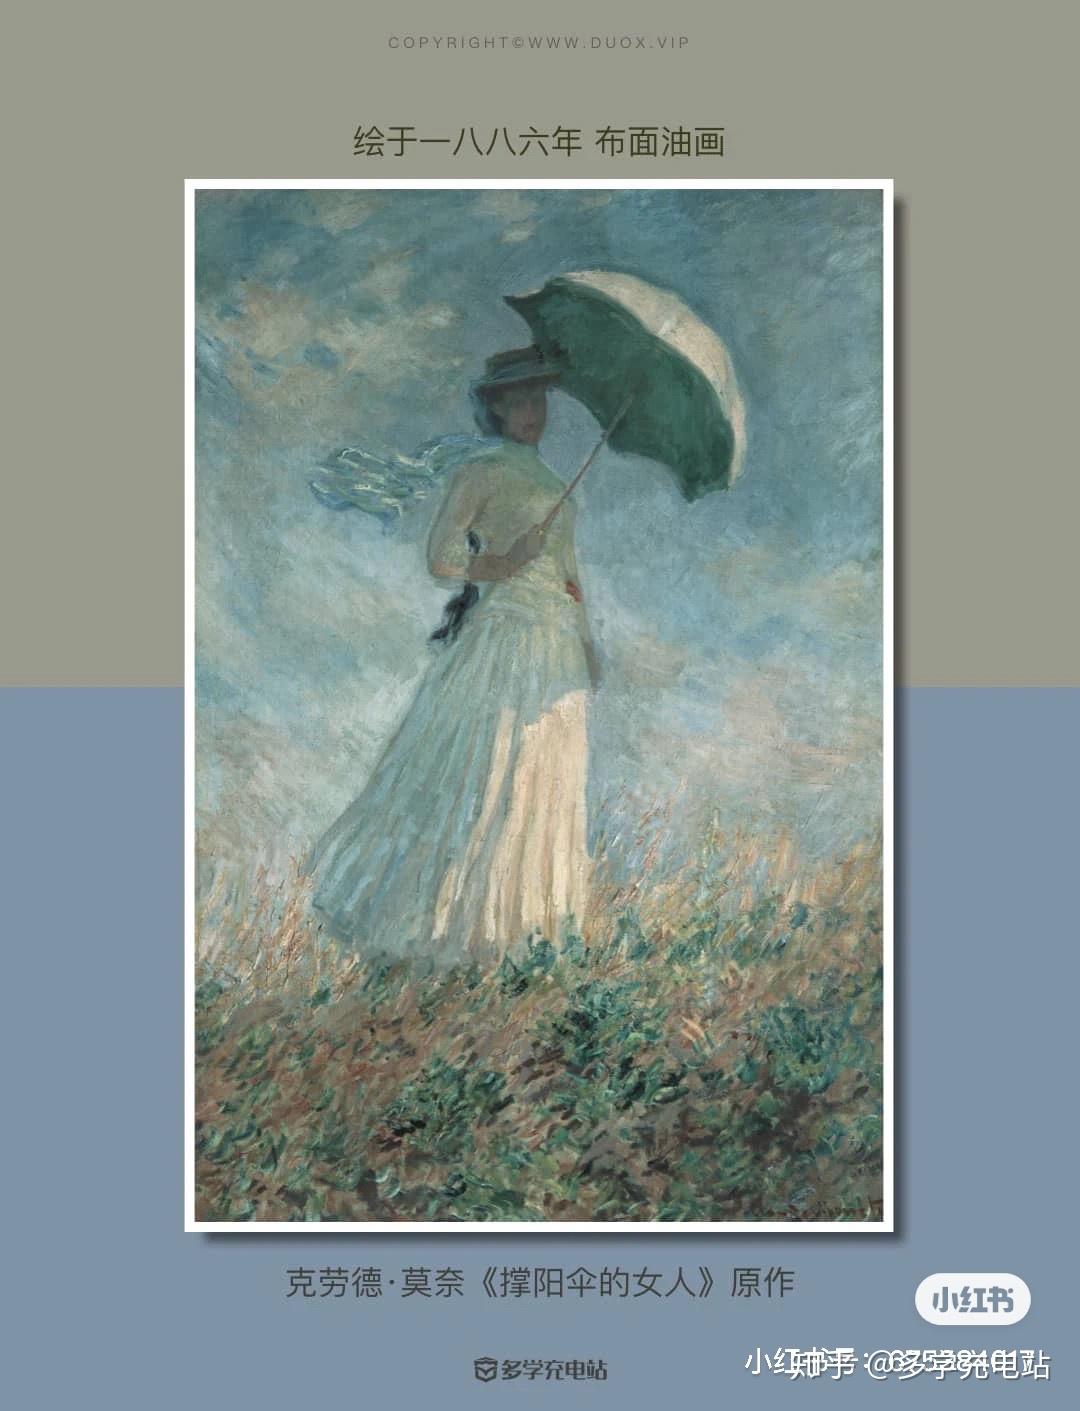 美丽的女孩在与透明伞的雨中 库存图片. 图片 包括有 人员, 草甸, 传神, 聚会所, 本质, 外面, 有吸引力的 - 41116091